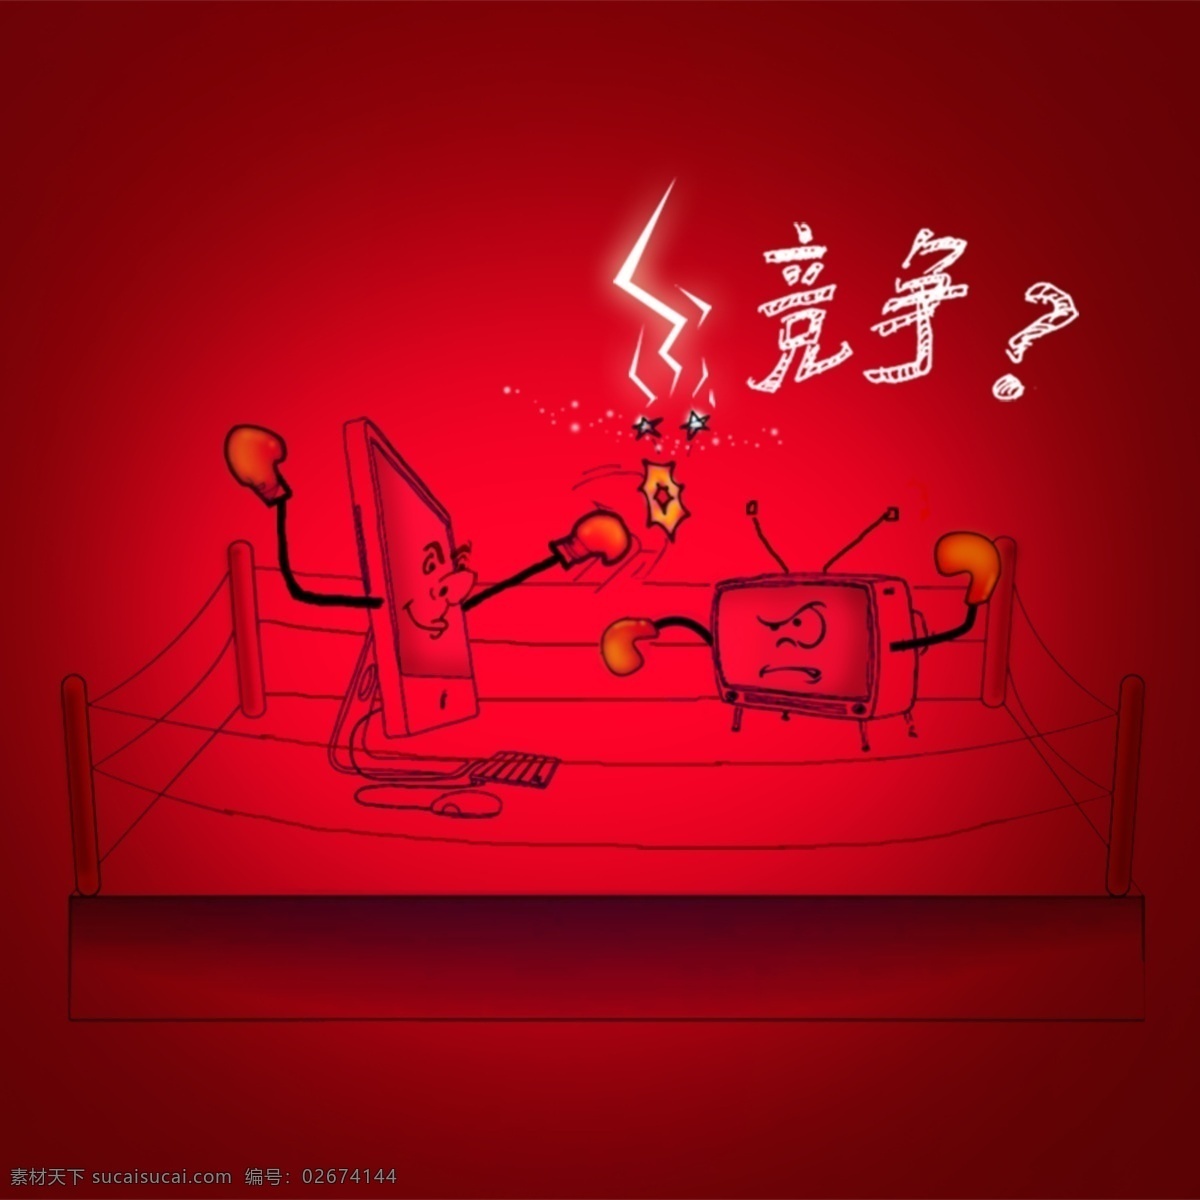 竞争 mac 电脑 电视 红色背景 拳击 网页模板 源文件 竞争素材下载 竞争模板下载 中文模板 网页素材